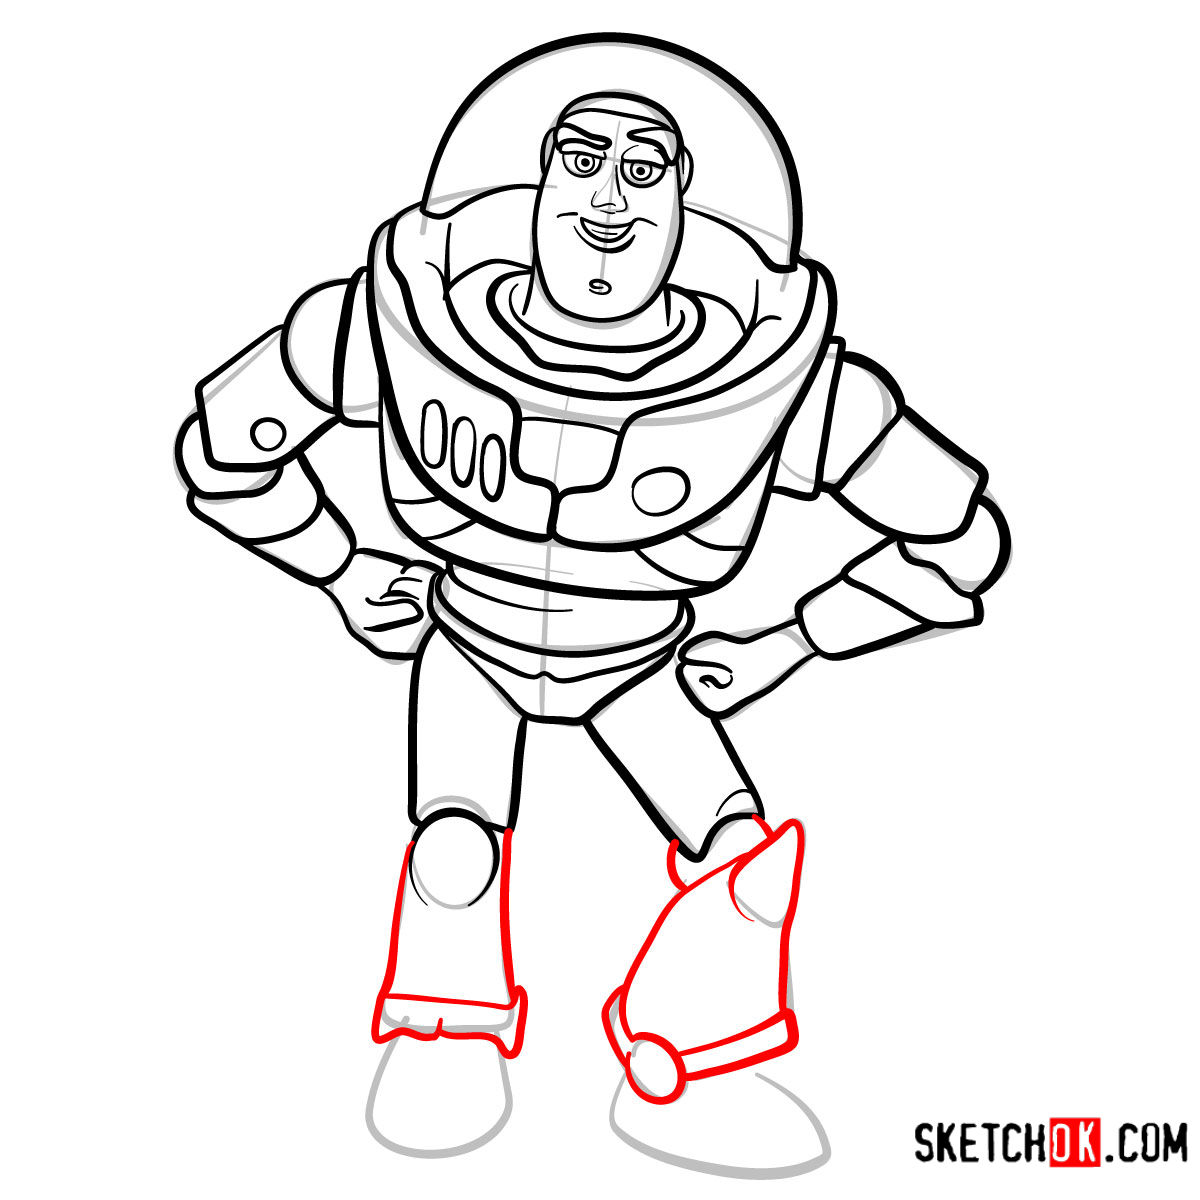 How to draw Buzz Lightyear | Toy Story - step 12